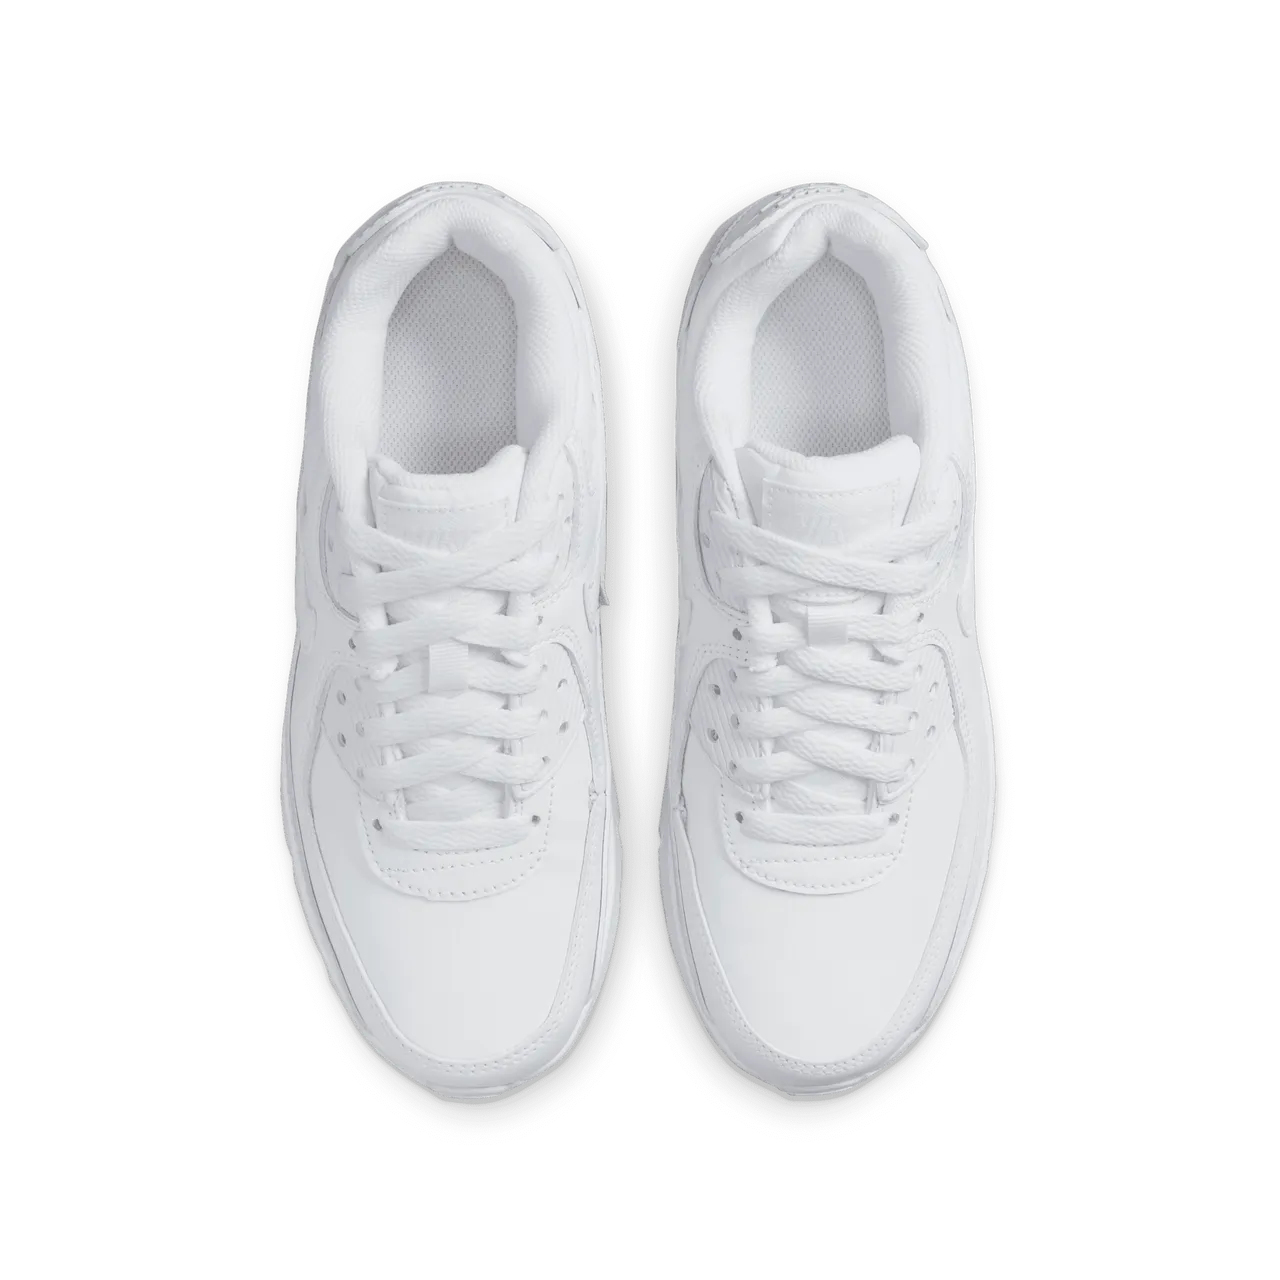 Nike Air Max 90 LTR Schuh für ältere Kinder - Weiß